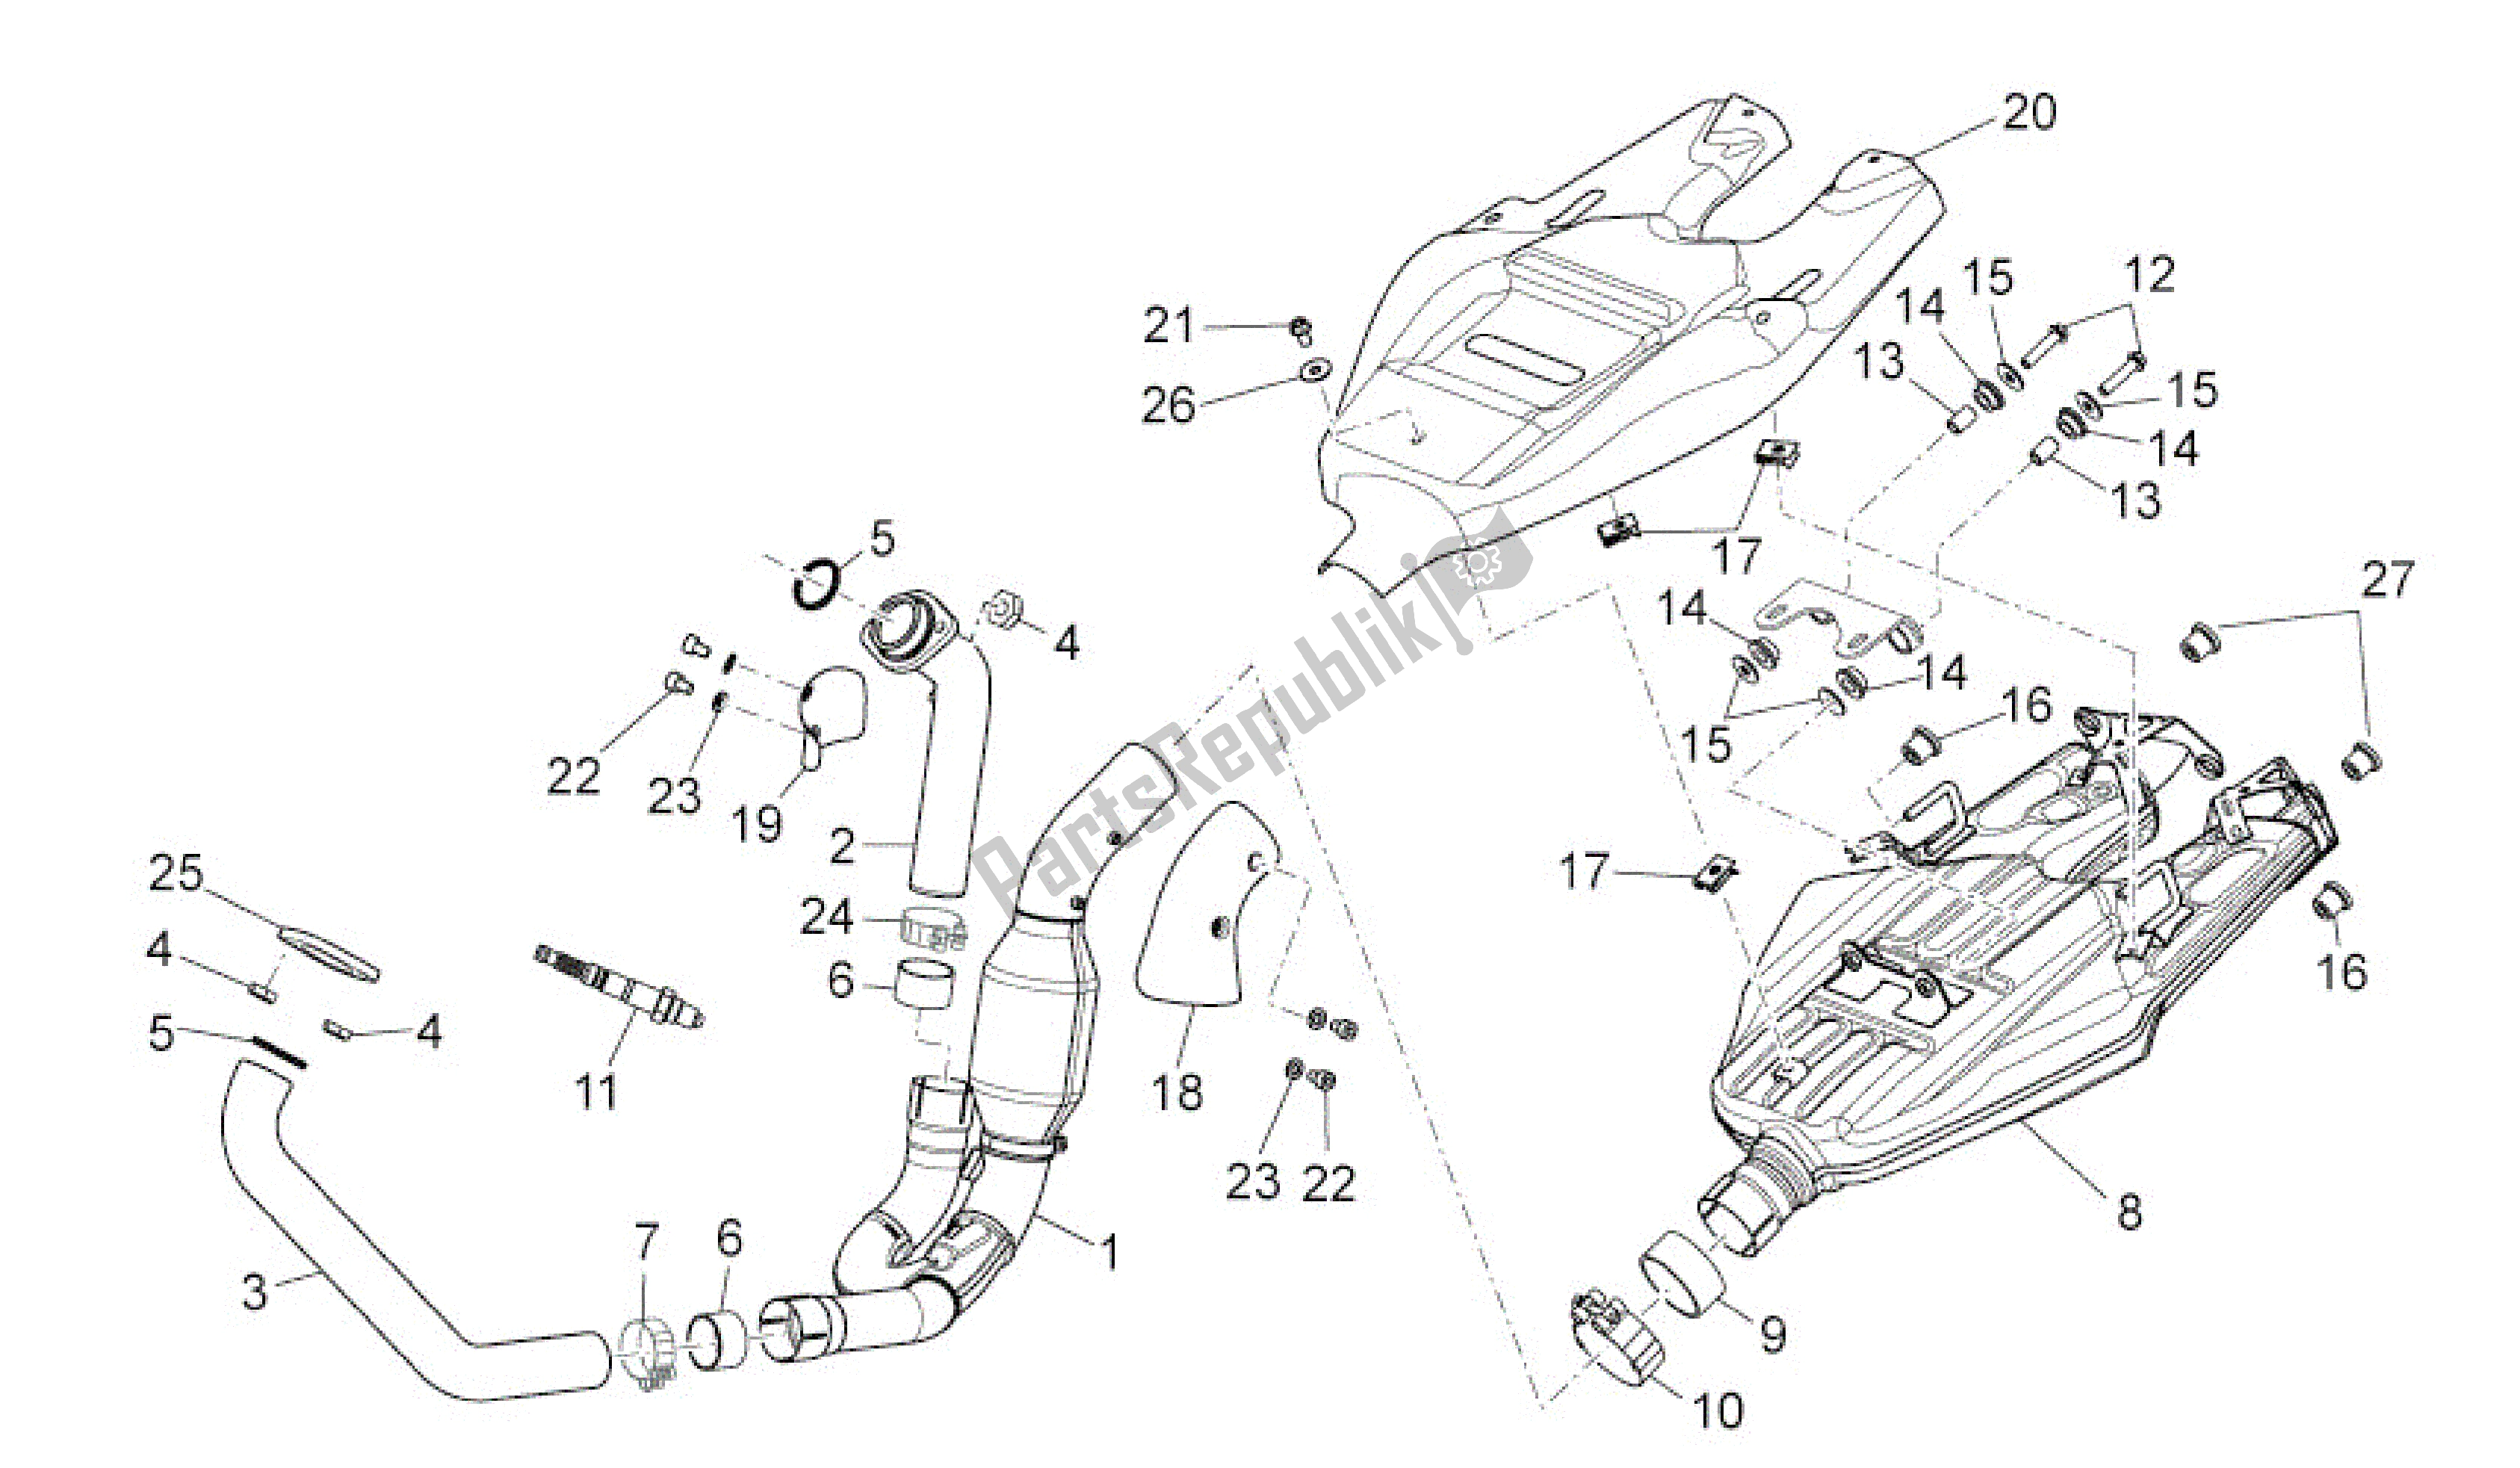 All parts for the Exhaust Unit of the Aprilia Dorsoduro 750 2010